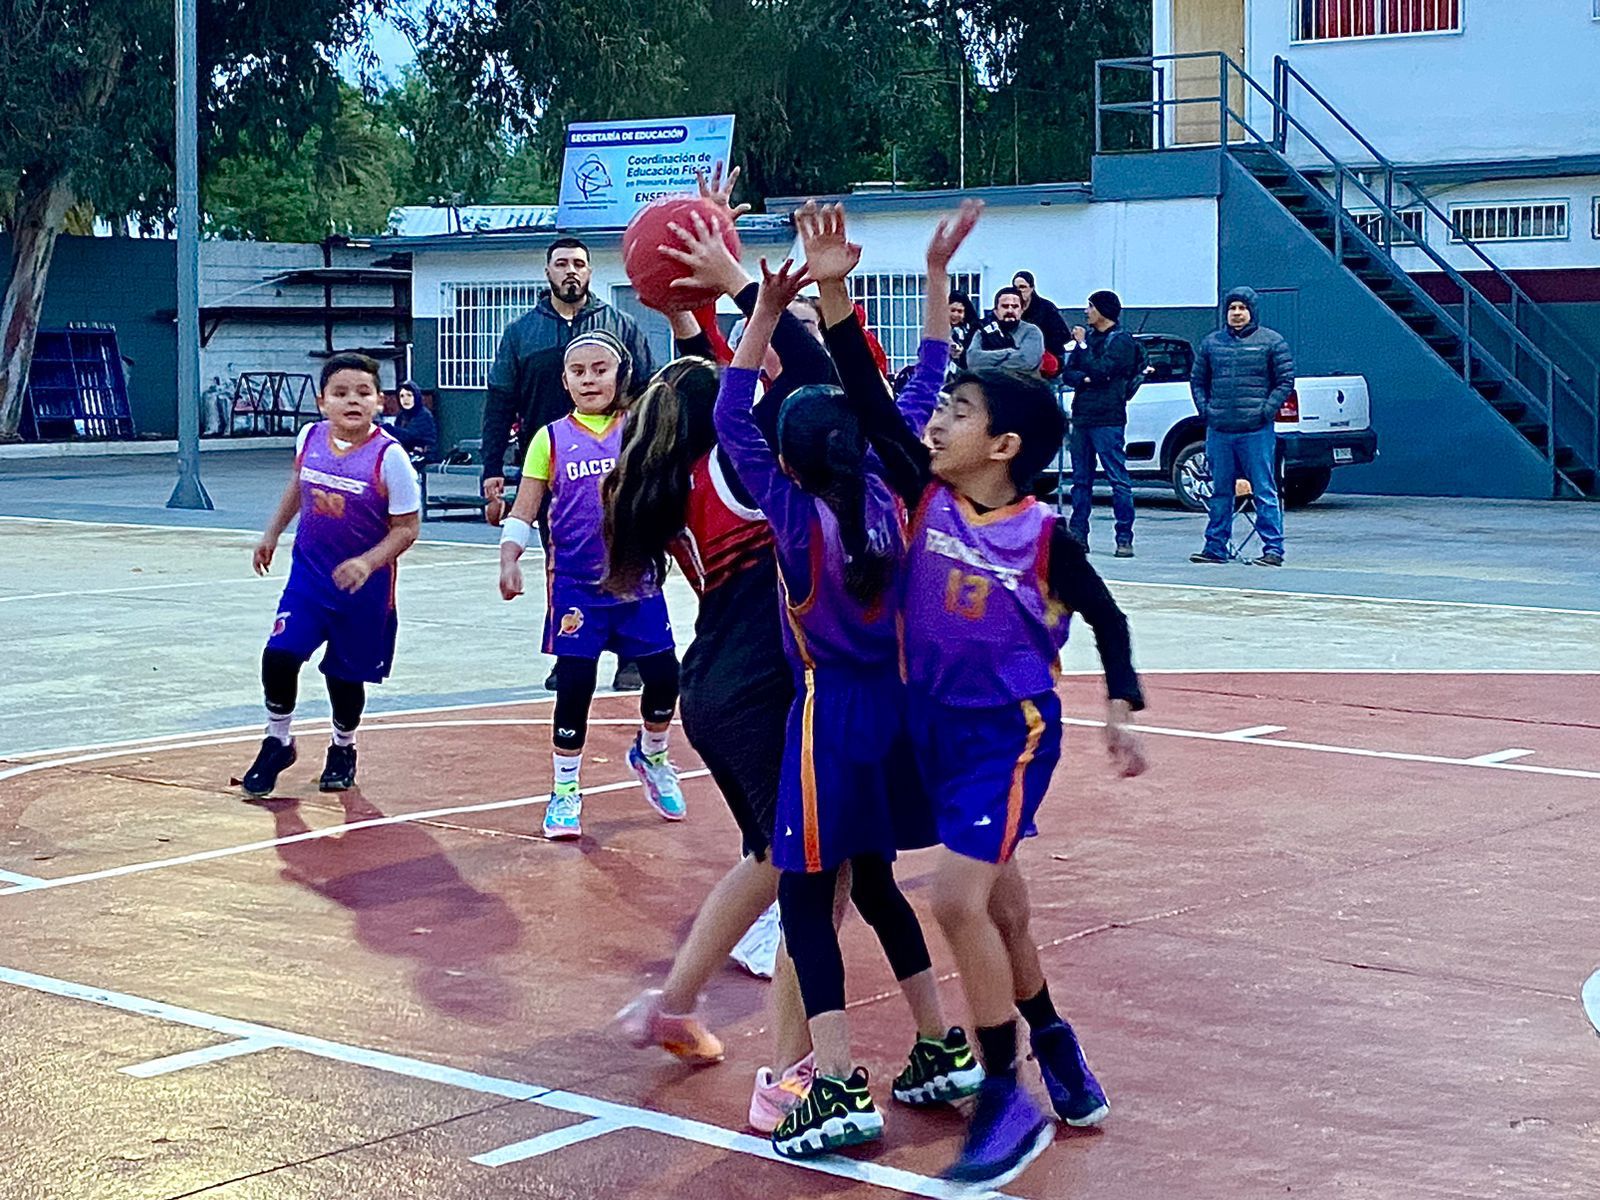 Juegan ronda de baloncesto infantil en Ensenada - El Mexicano